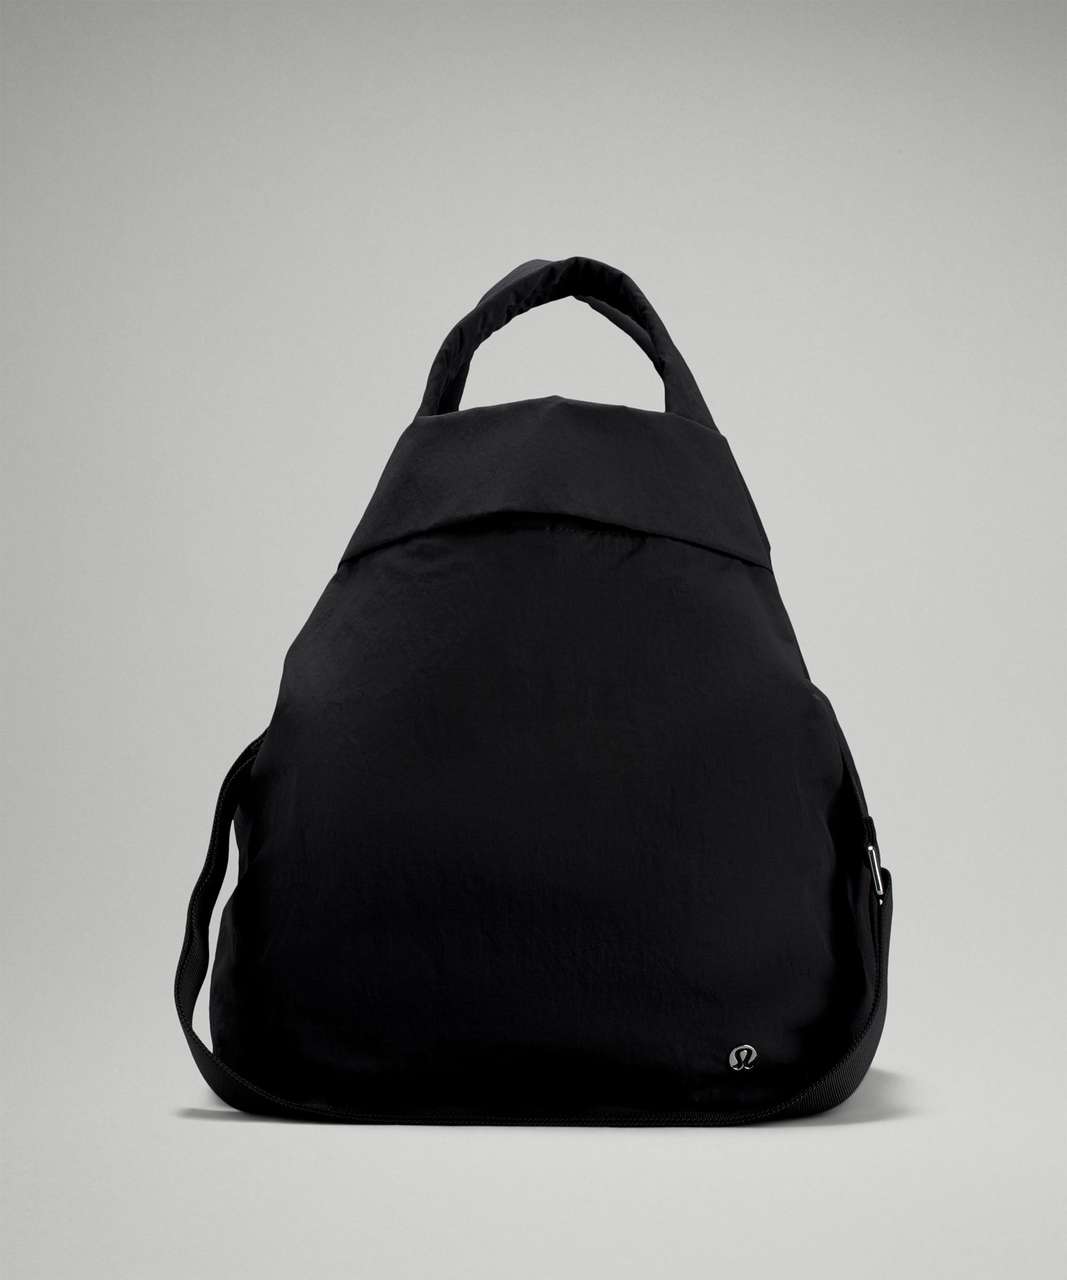 Lululemon On My Level Bag 2.0 19L - Black (First Release)